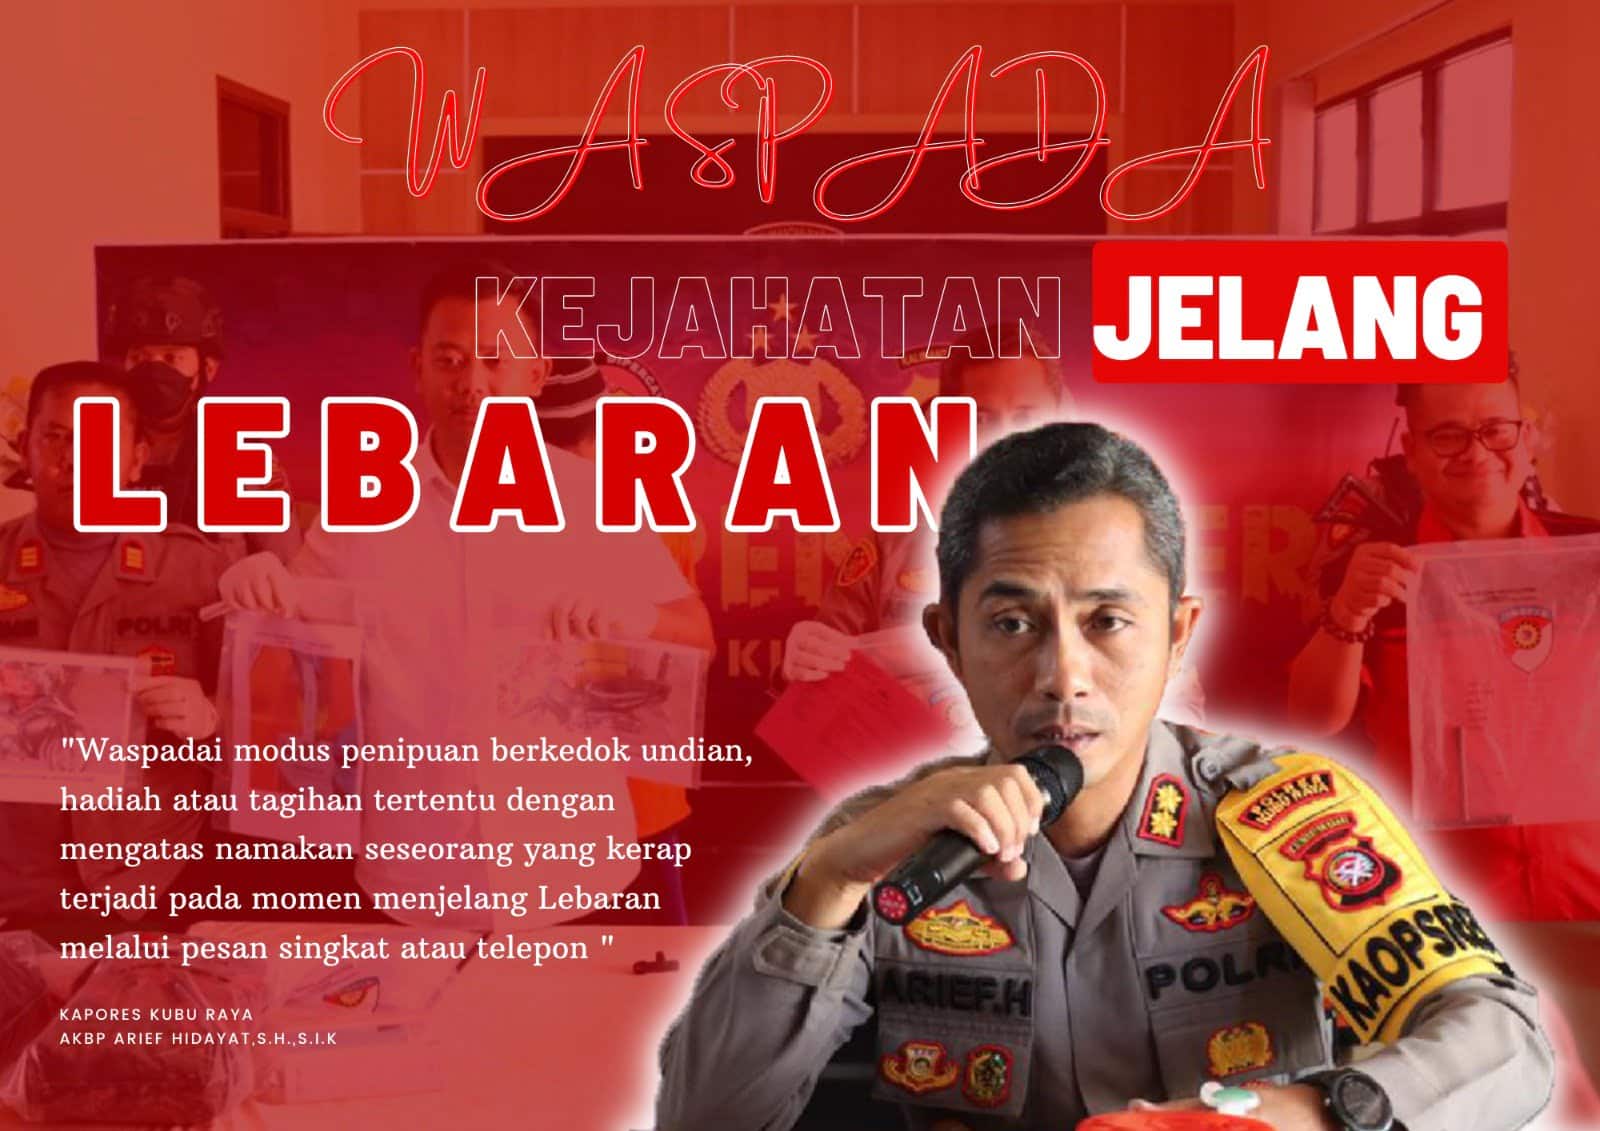 Kapolres Kubu Raya, AKBP Arief Hidayat. (Foto: Humas Polres Kubu Raya)